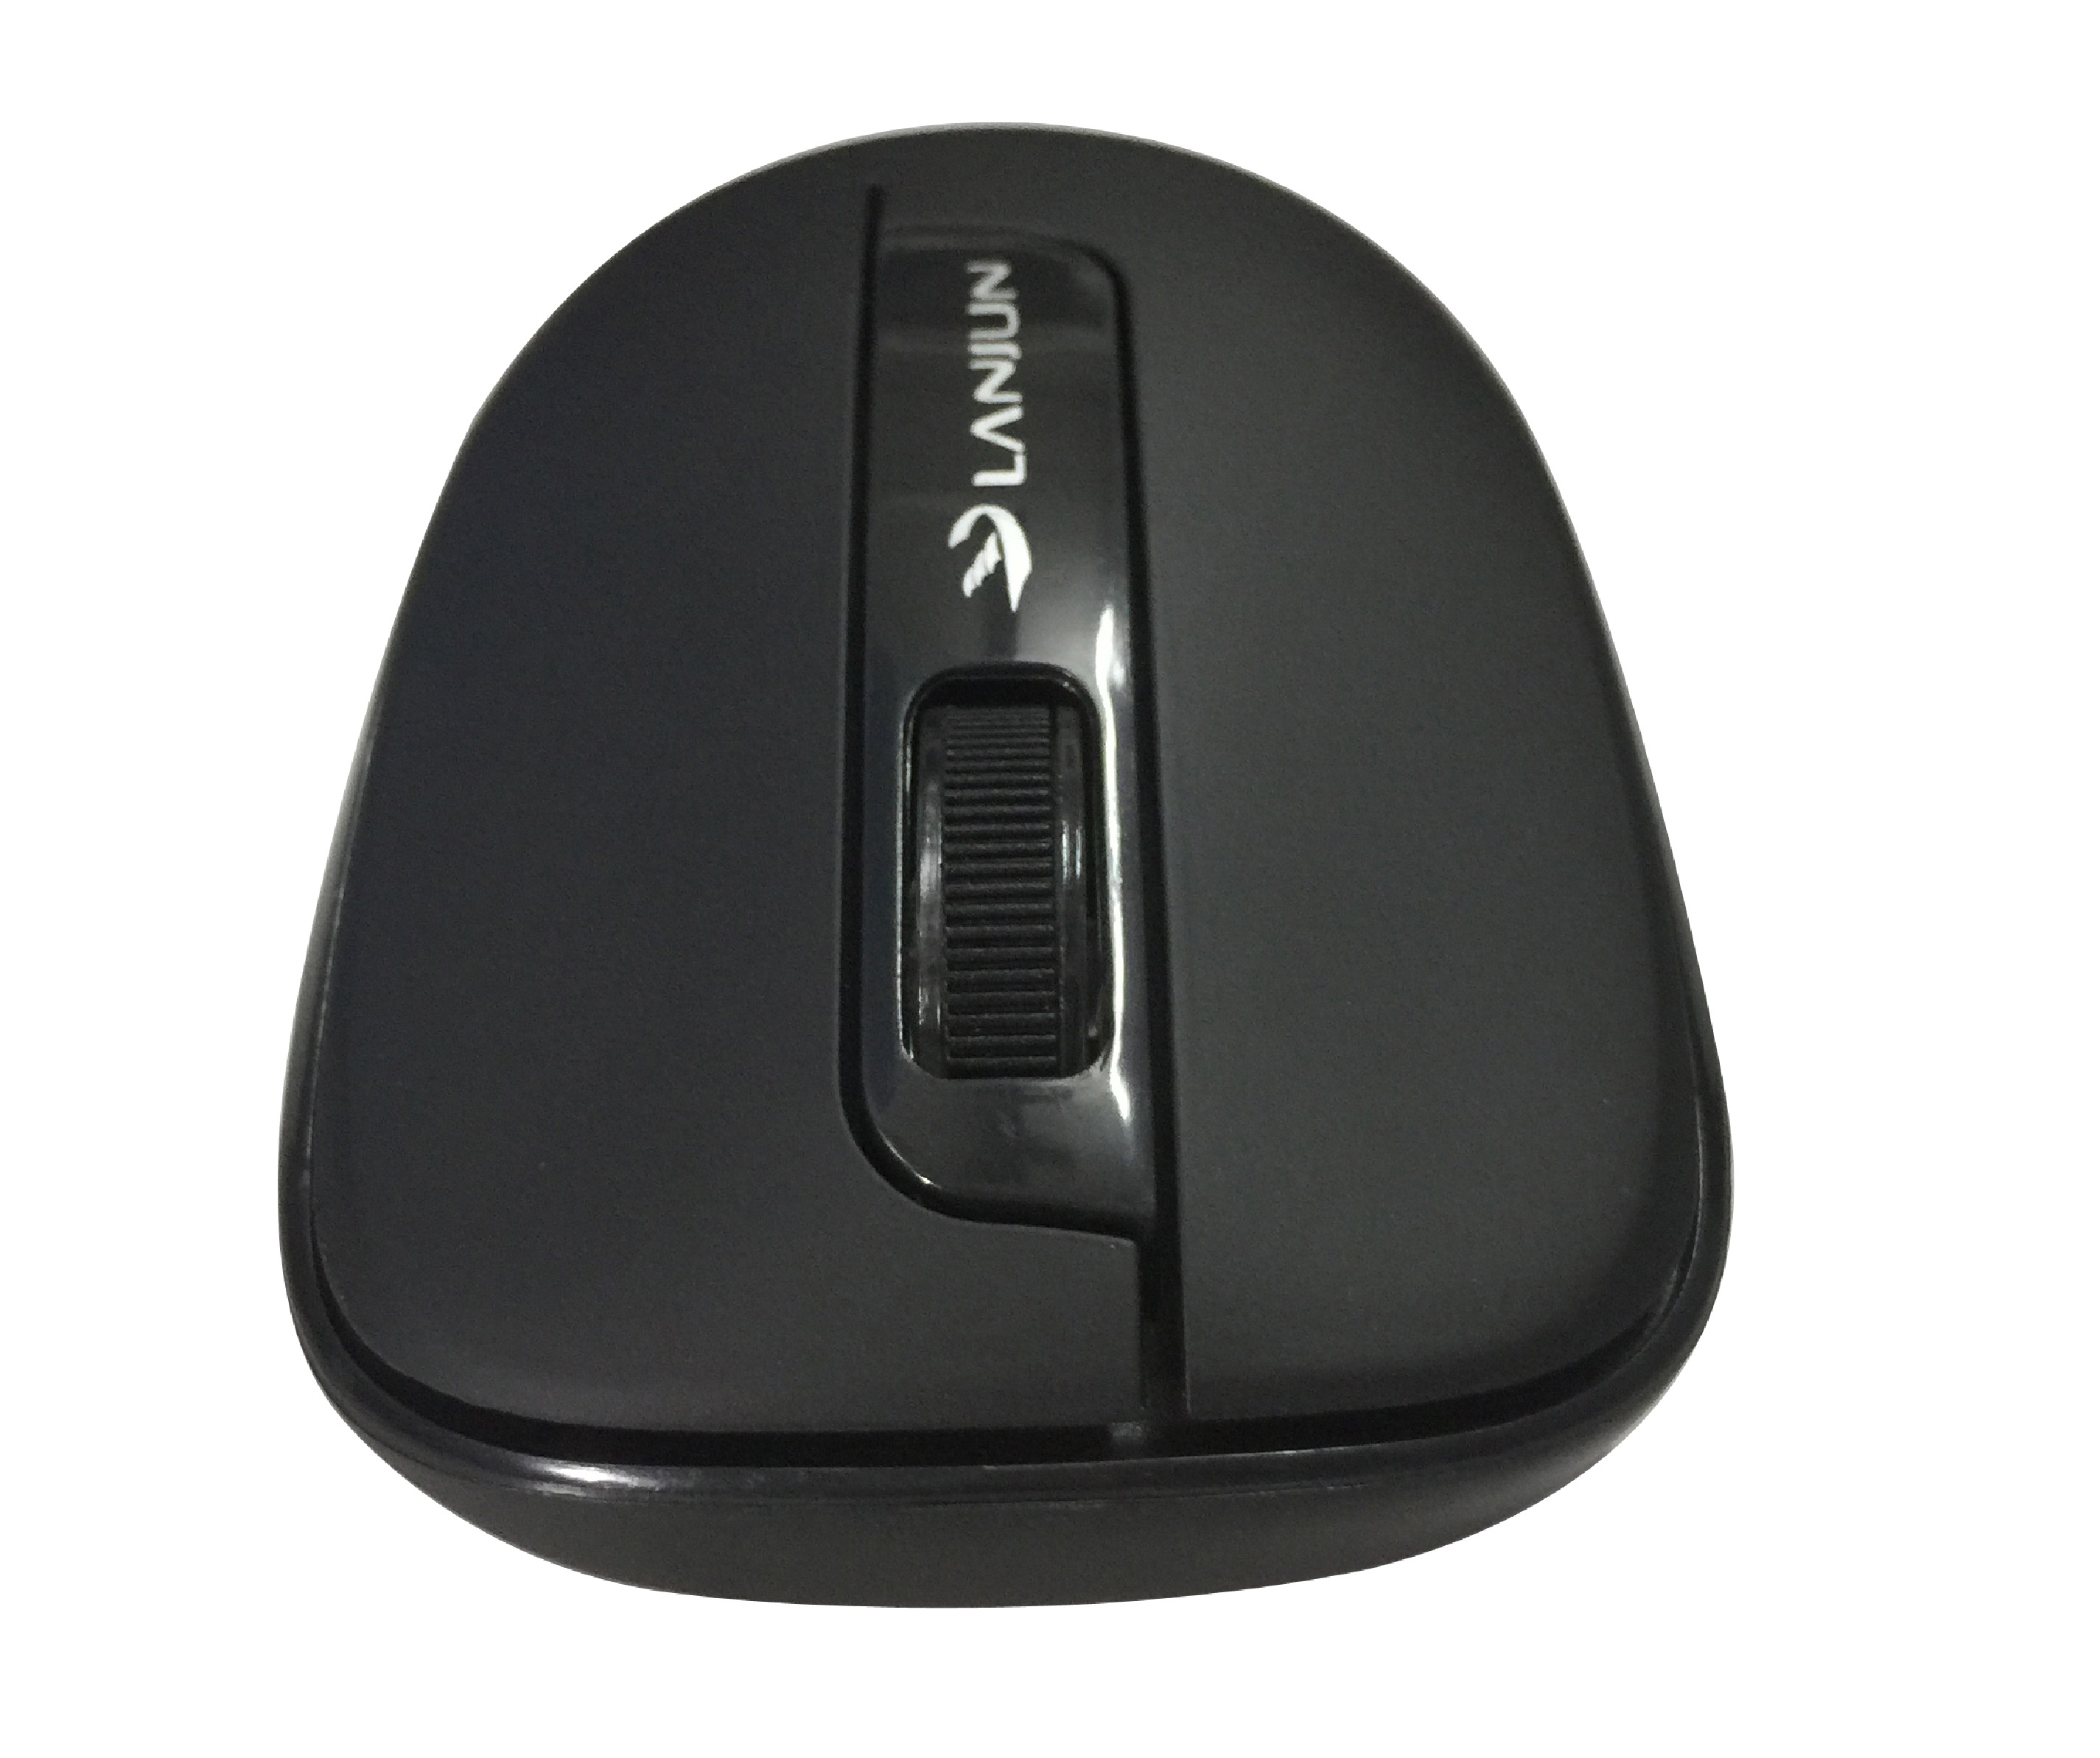 Mouse Lanjun wireless WM1123 2